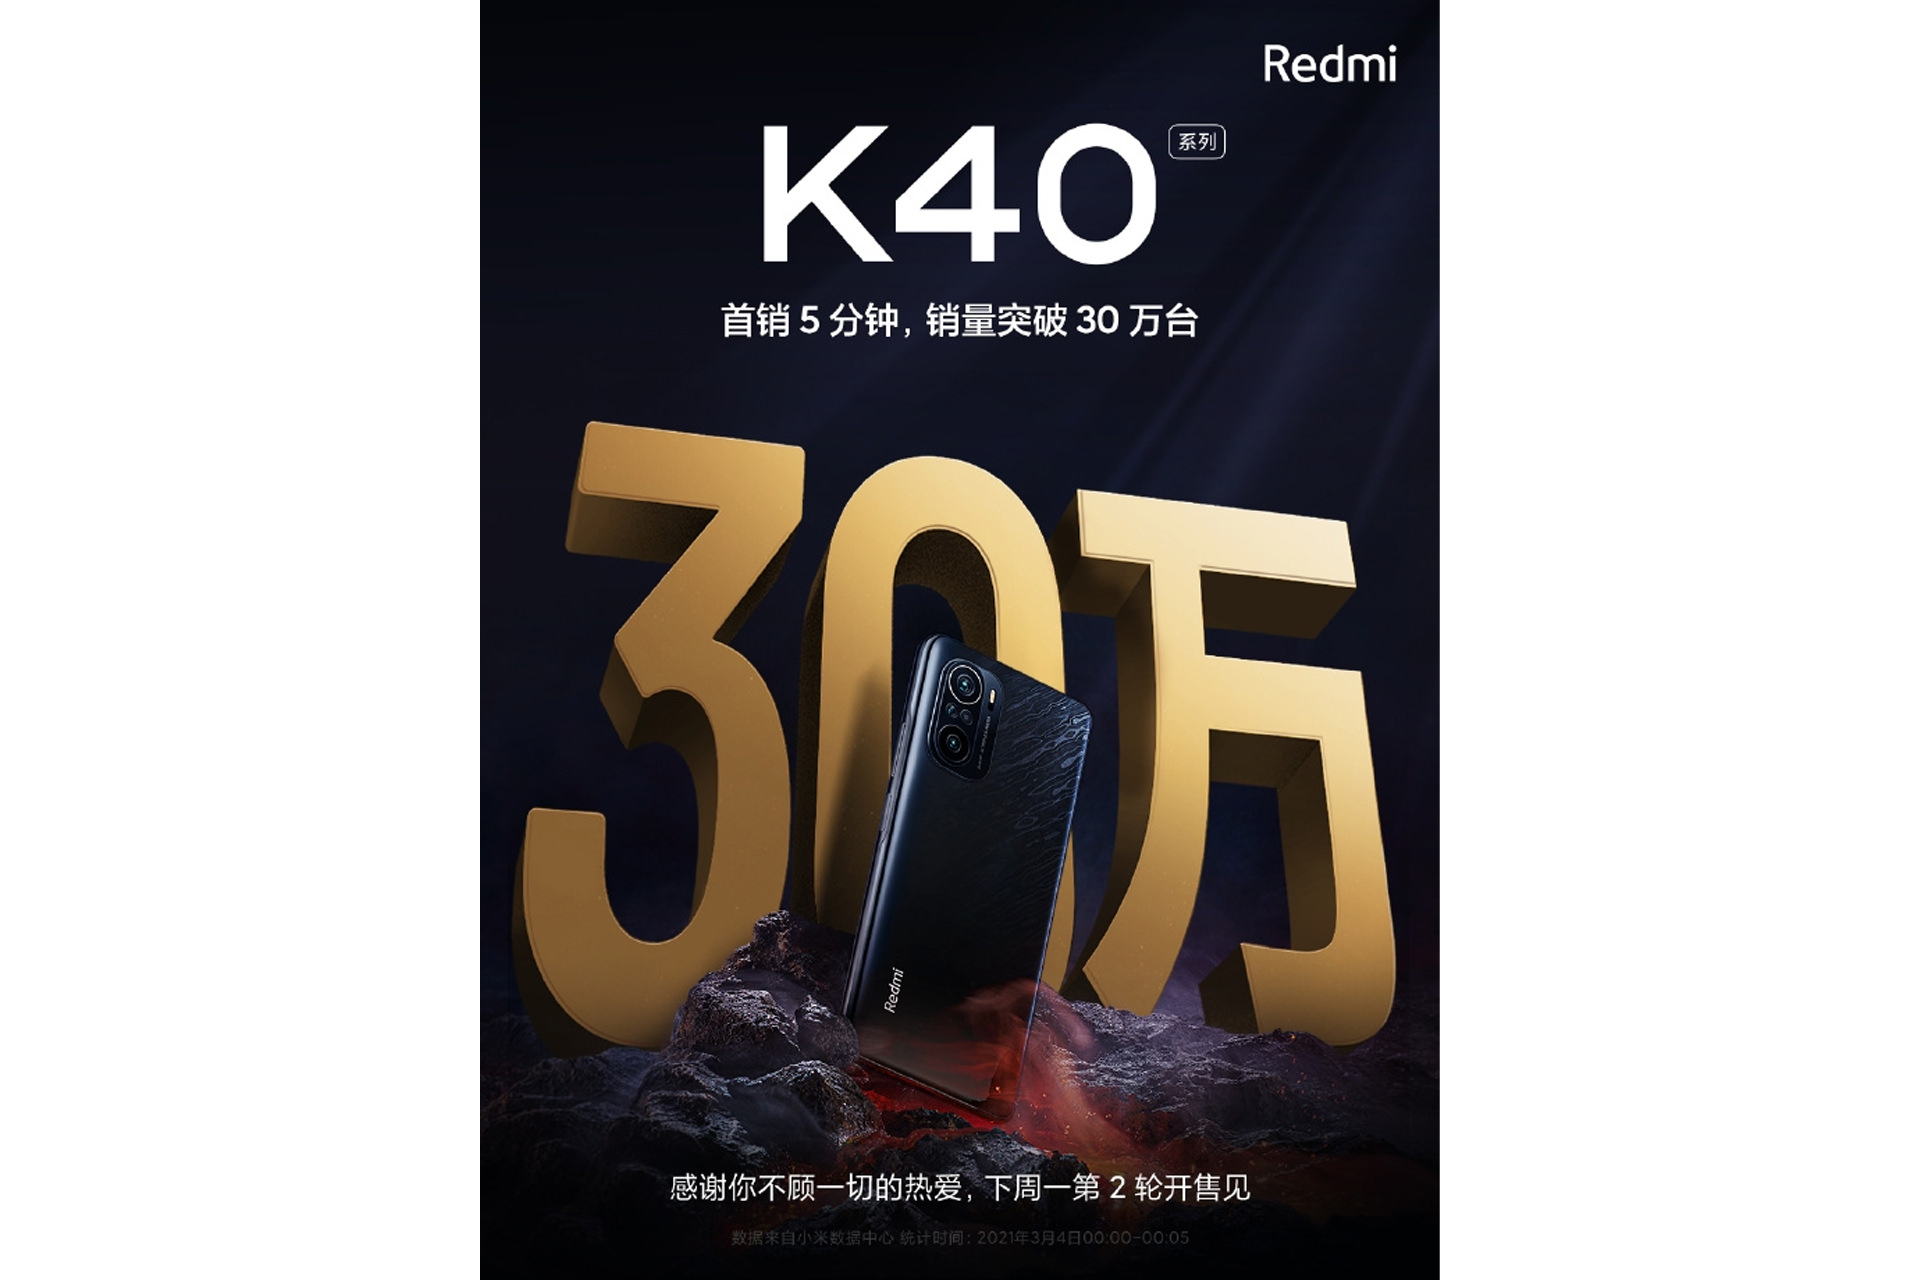 پوستر شیائومی برای فروش 300 هزار دستگاه ردمی K40 در 5 دقیقه